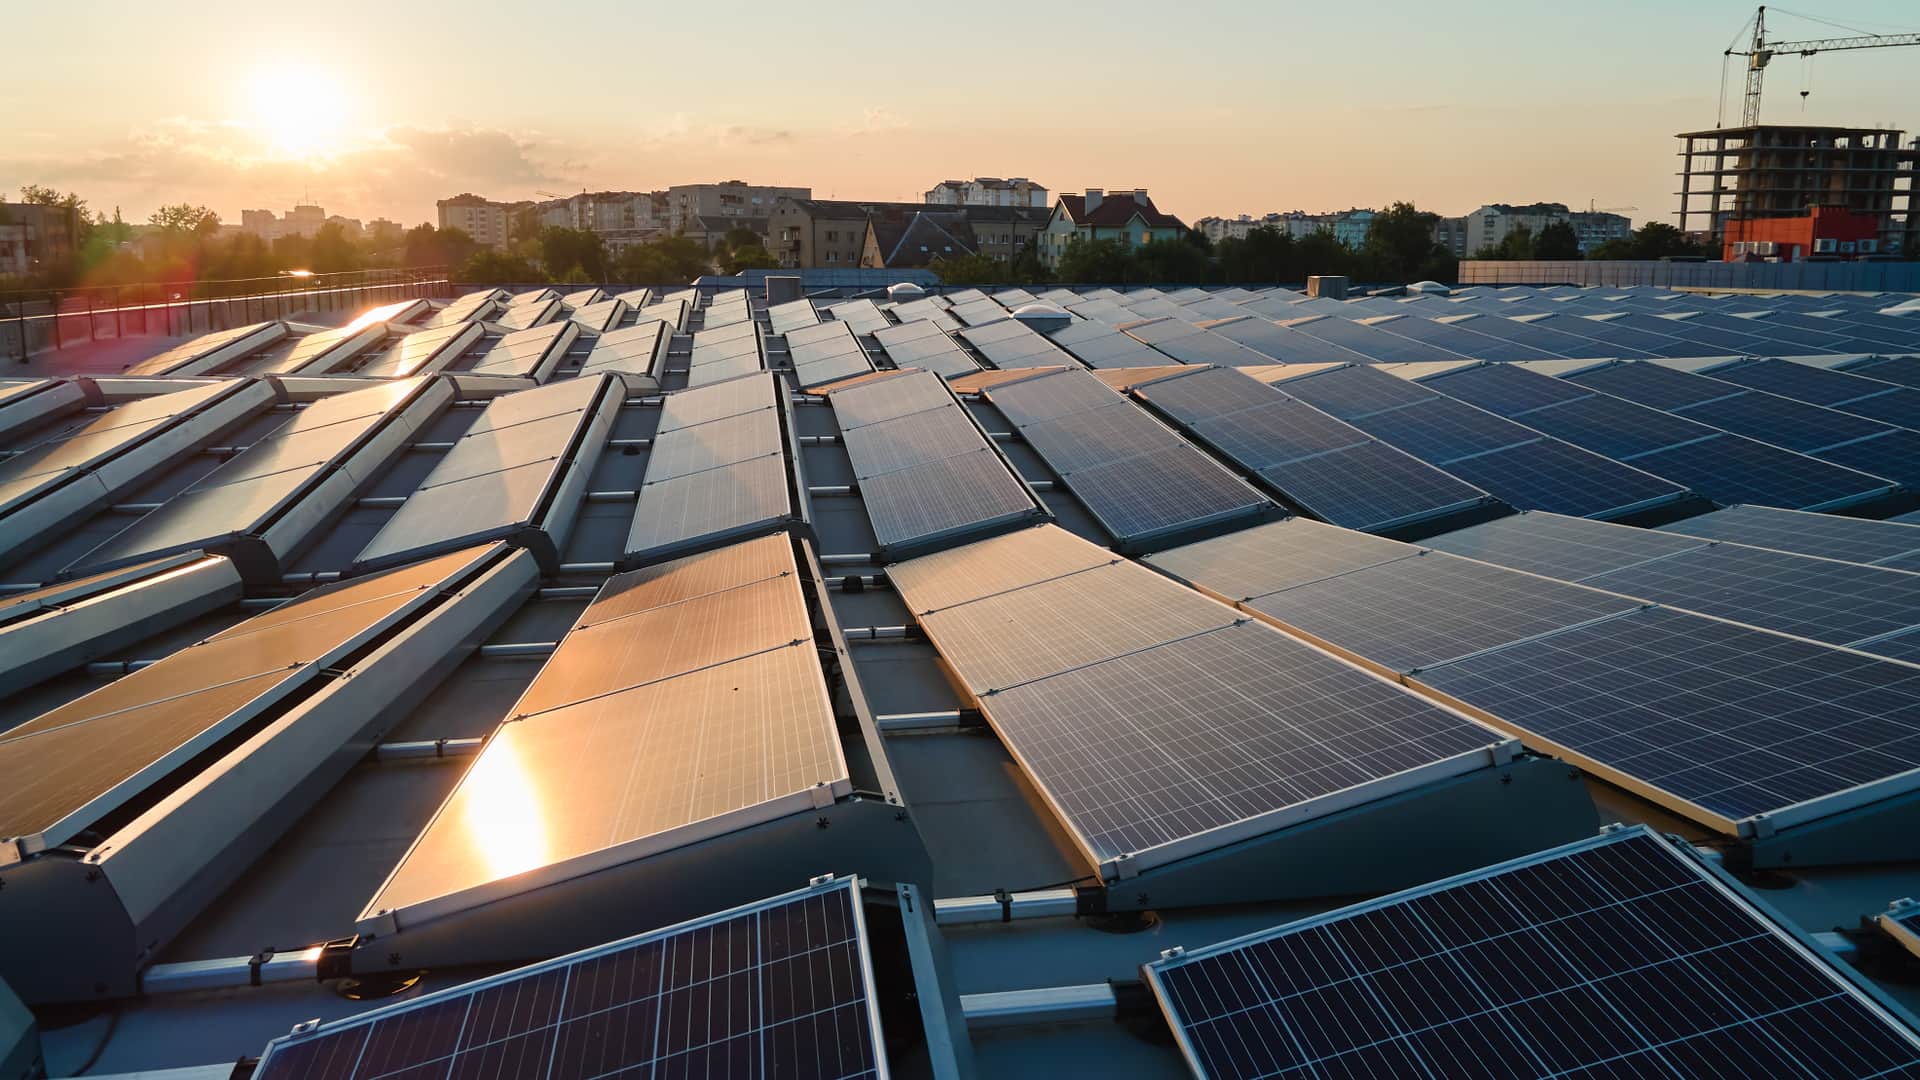 Placas de energía solar de tipo fotovoltaico sobre tejados